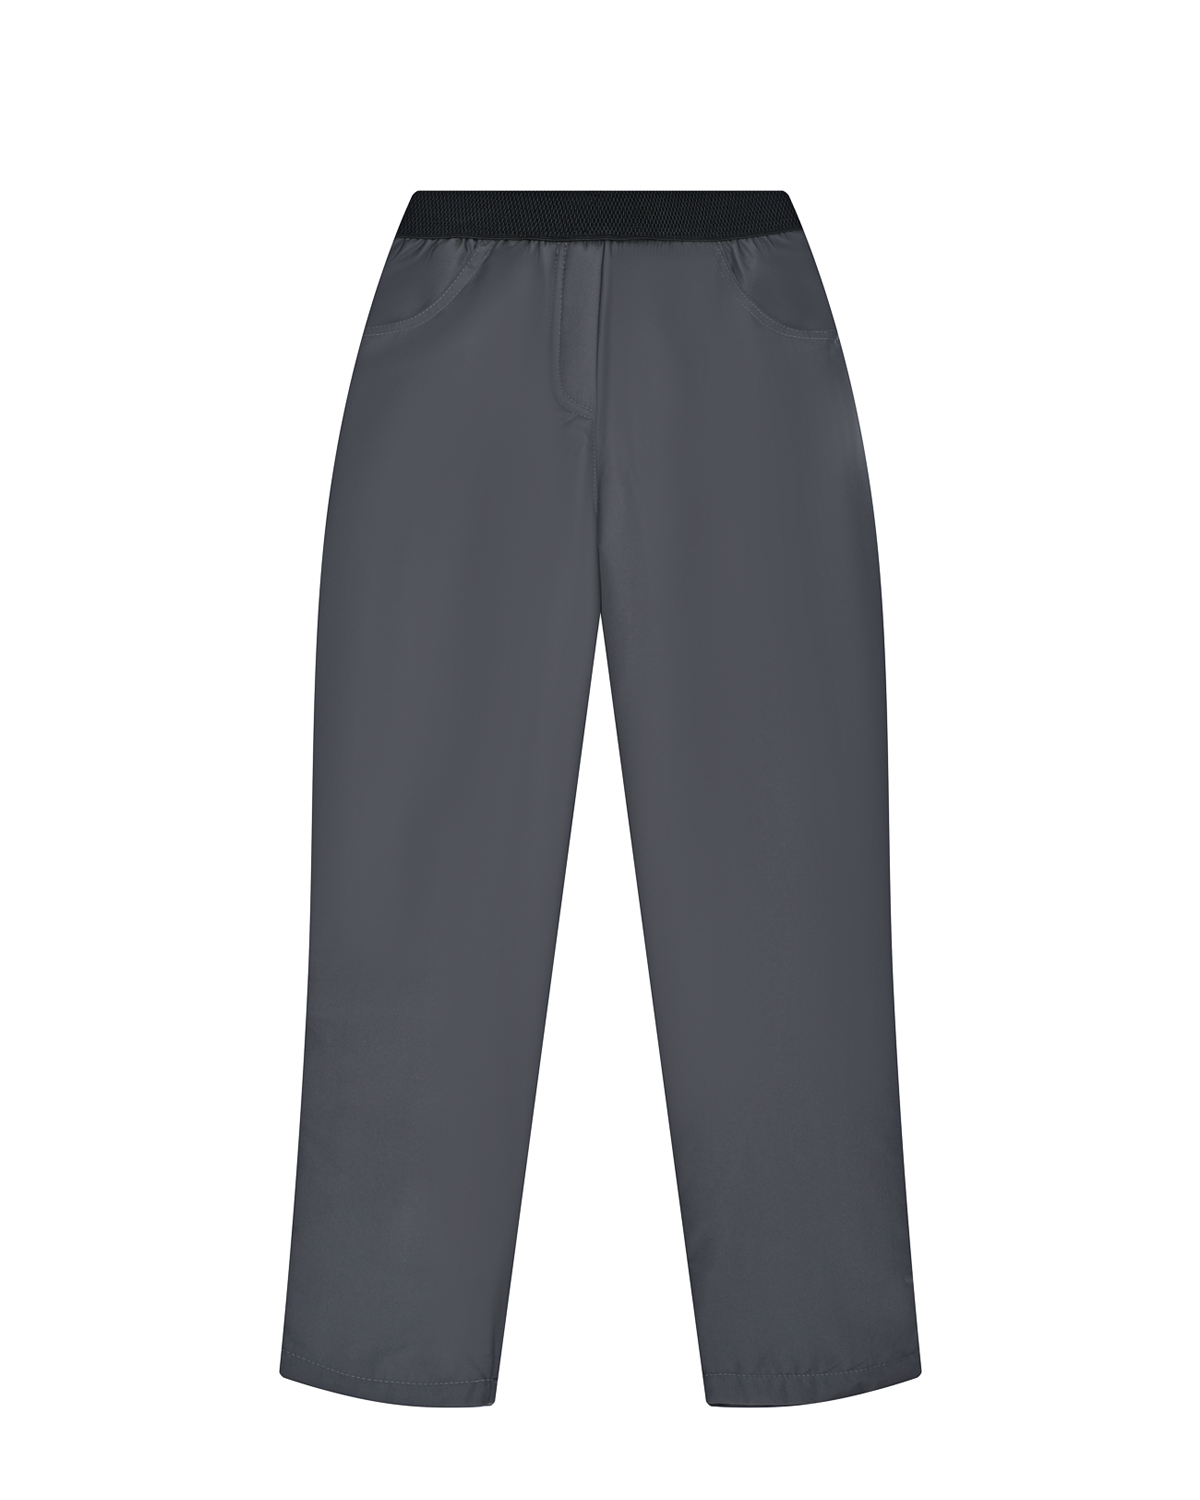 Серые утепленные брюки Dan Maralex детские, размер 116, цвет серый